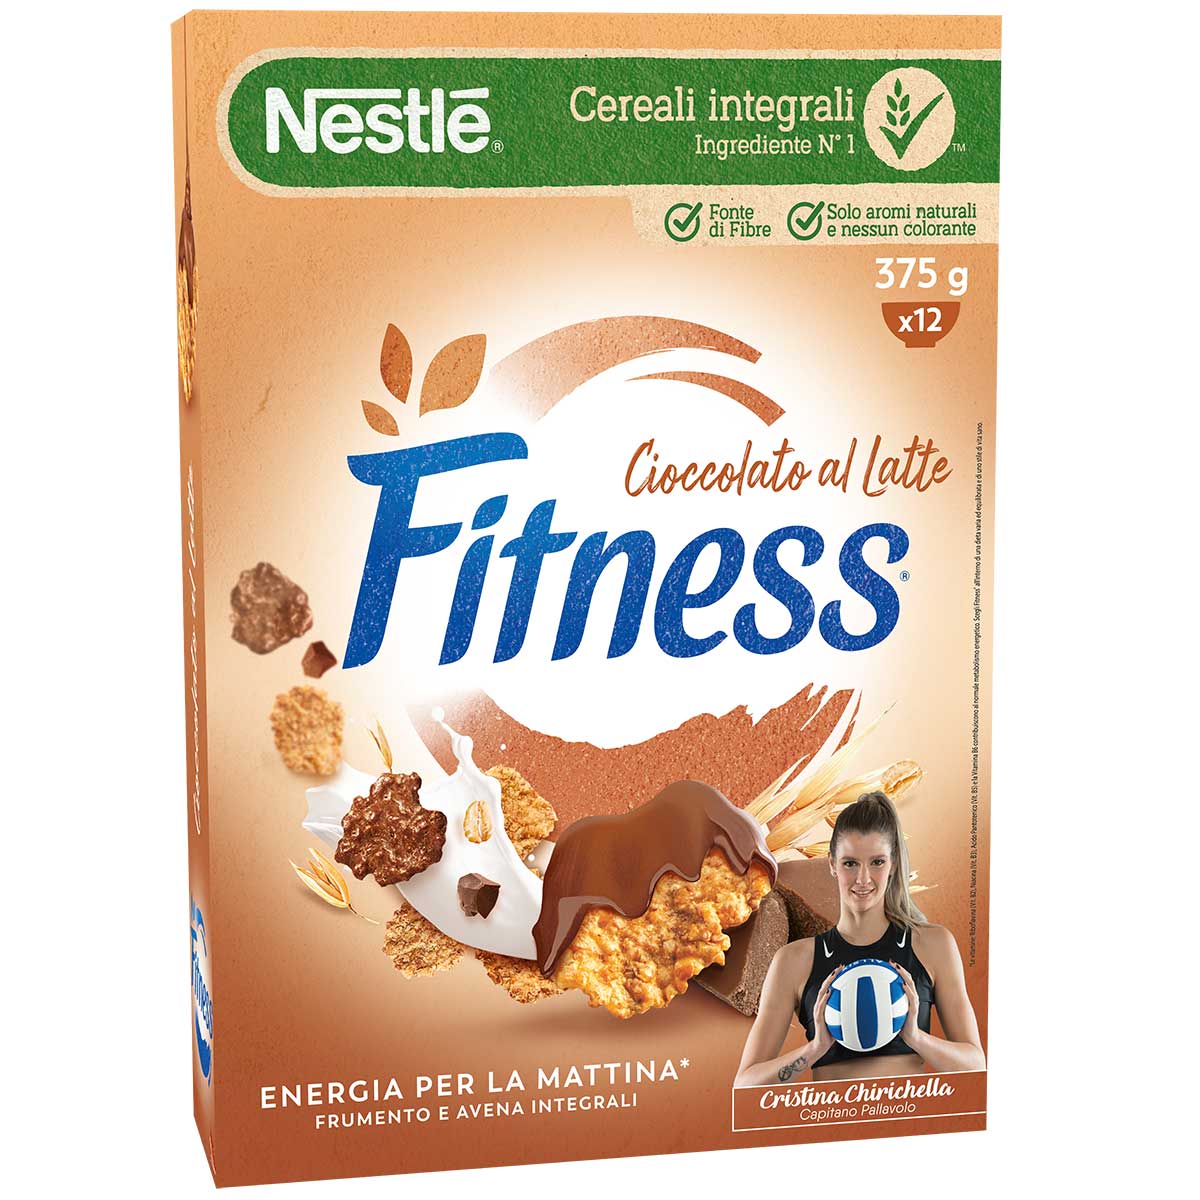 Fitness CIOCCOLATO Cereali con frumento e avena integrali e fiocchi ricoperti al cioccolato 375g